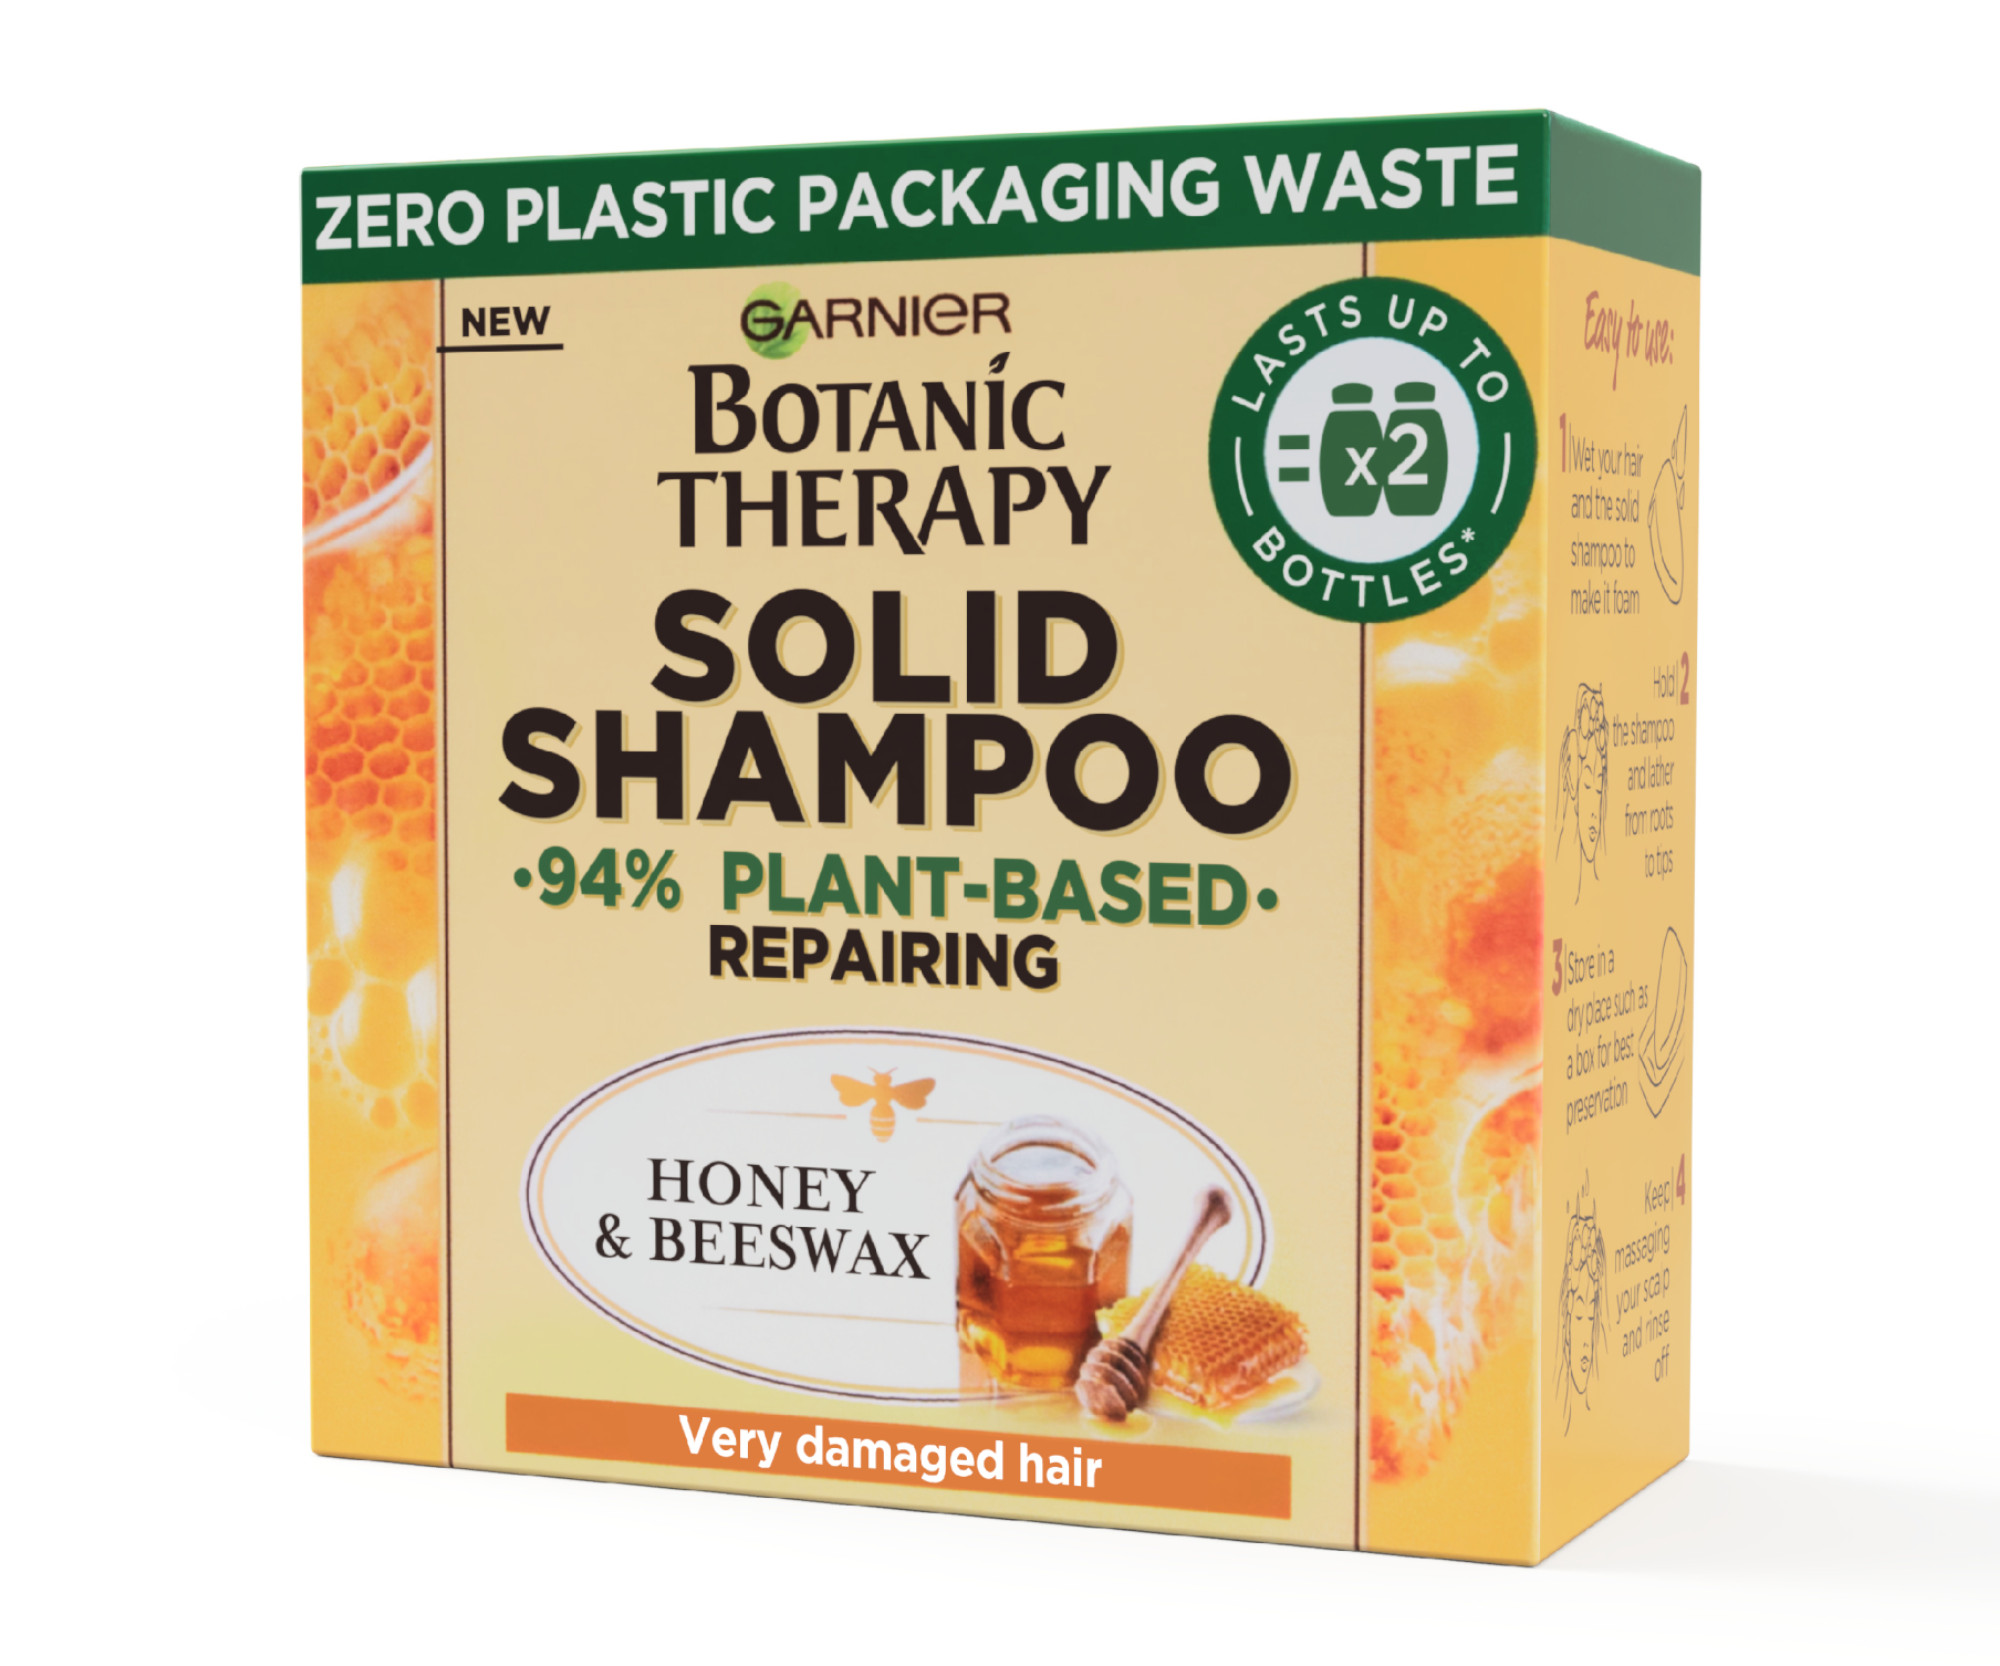 Obnovující tuhý šampon Garnier Botanic Therapy Solid Shampoo Honey a Beeswax - 60 g + dárek zdarma